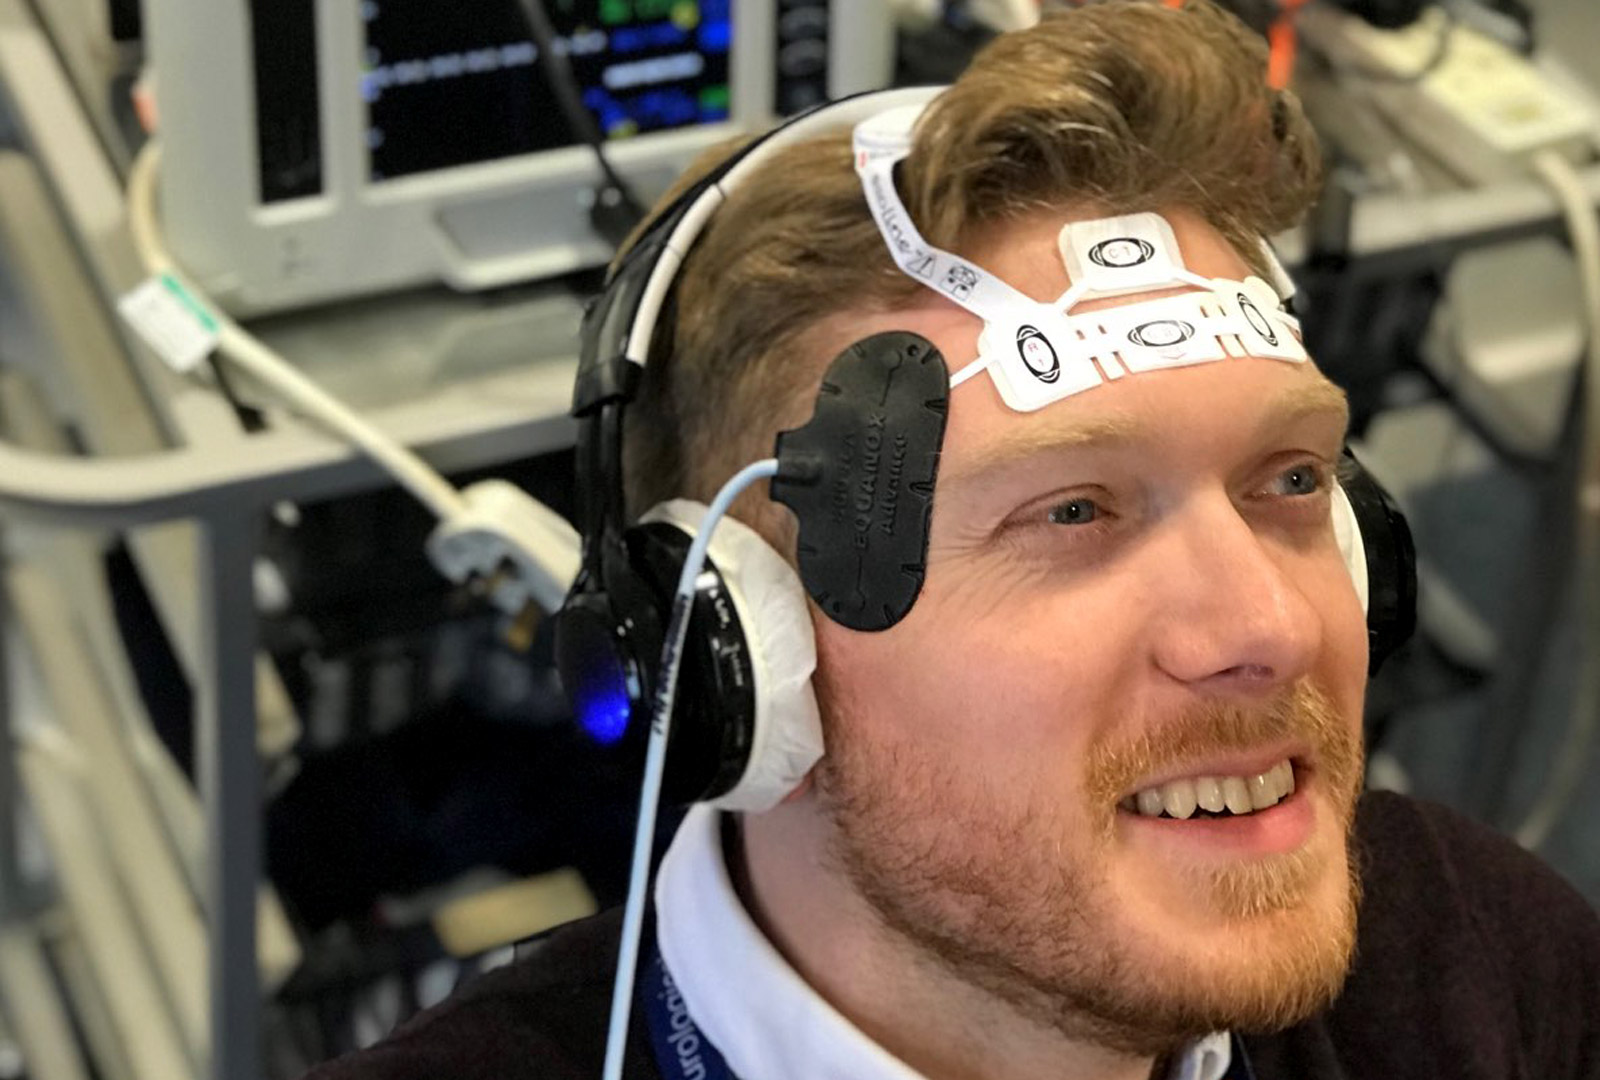 Membro del team in Inghilterra Dimostra apparecchiature di monitoraggio del cervello 